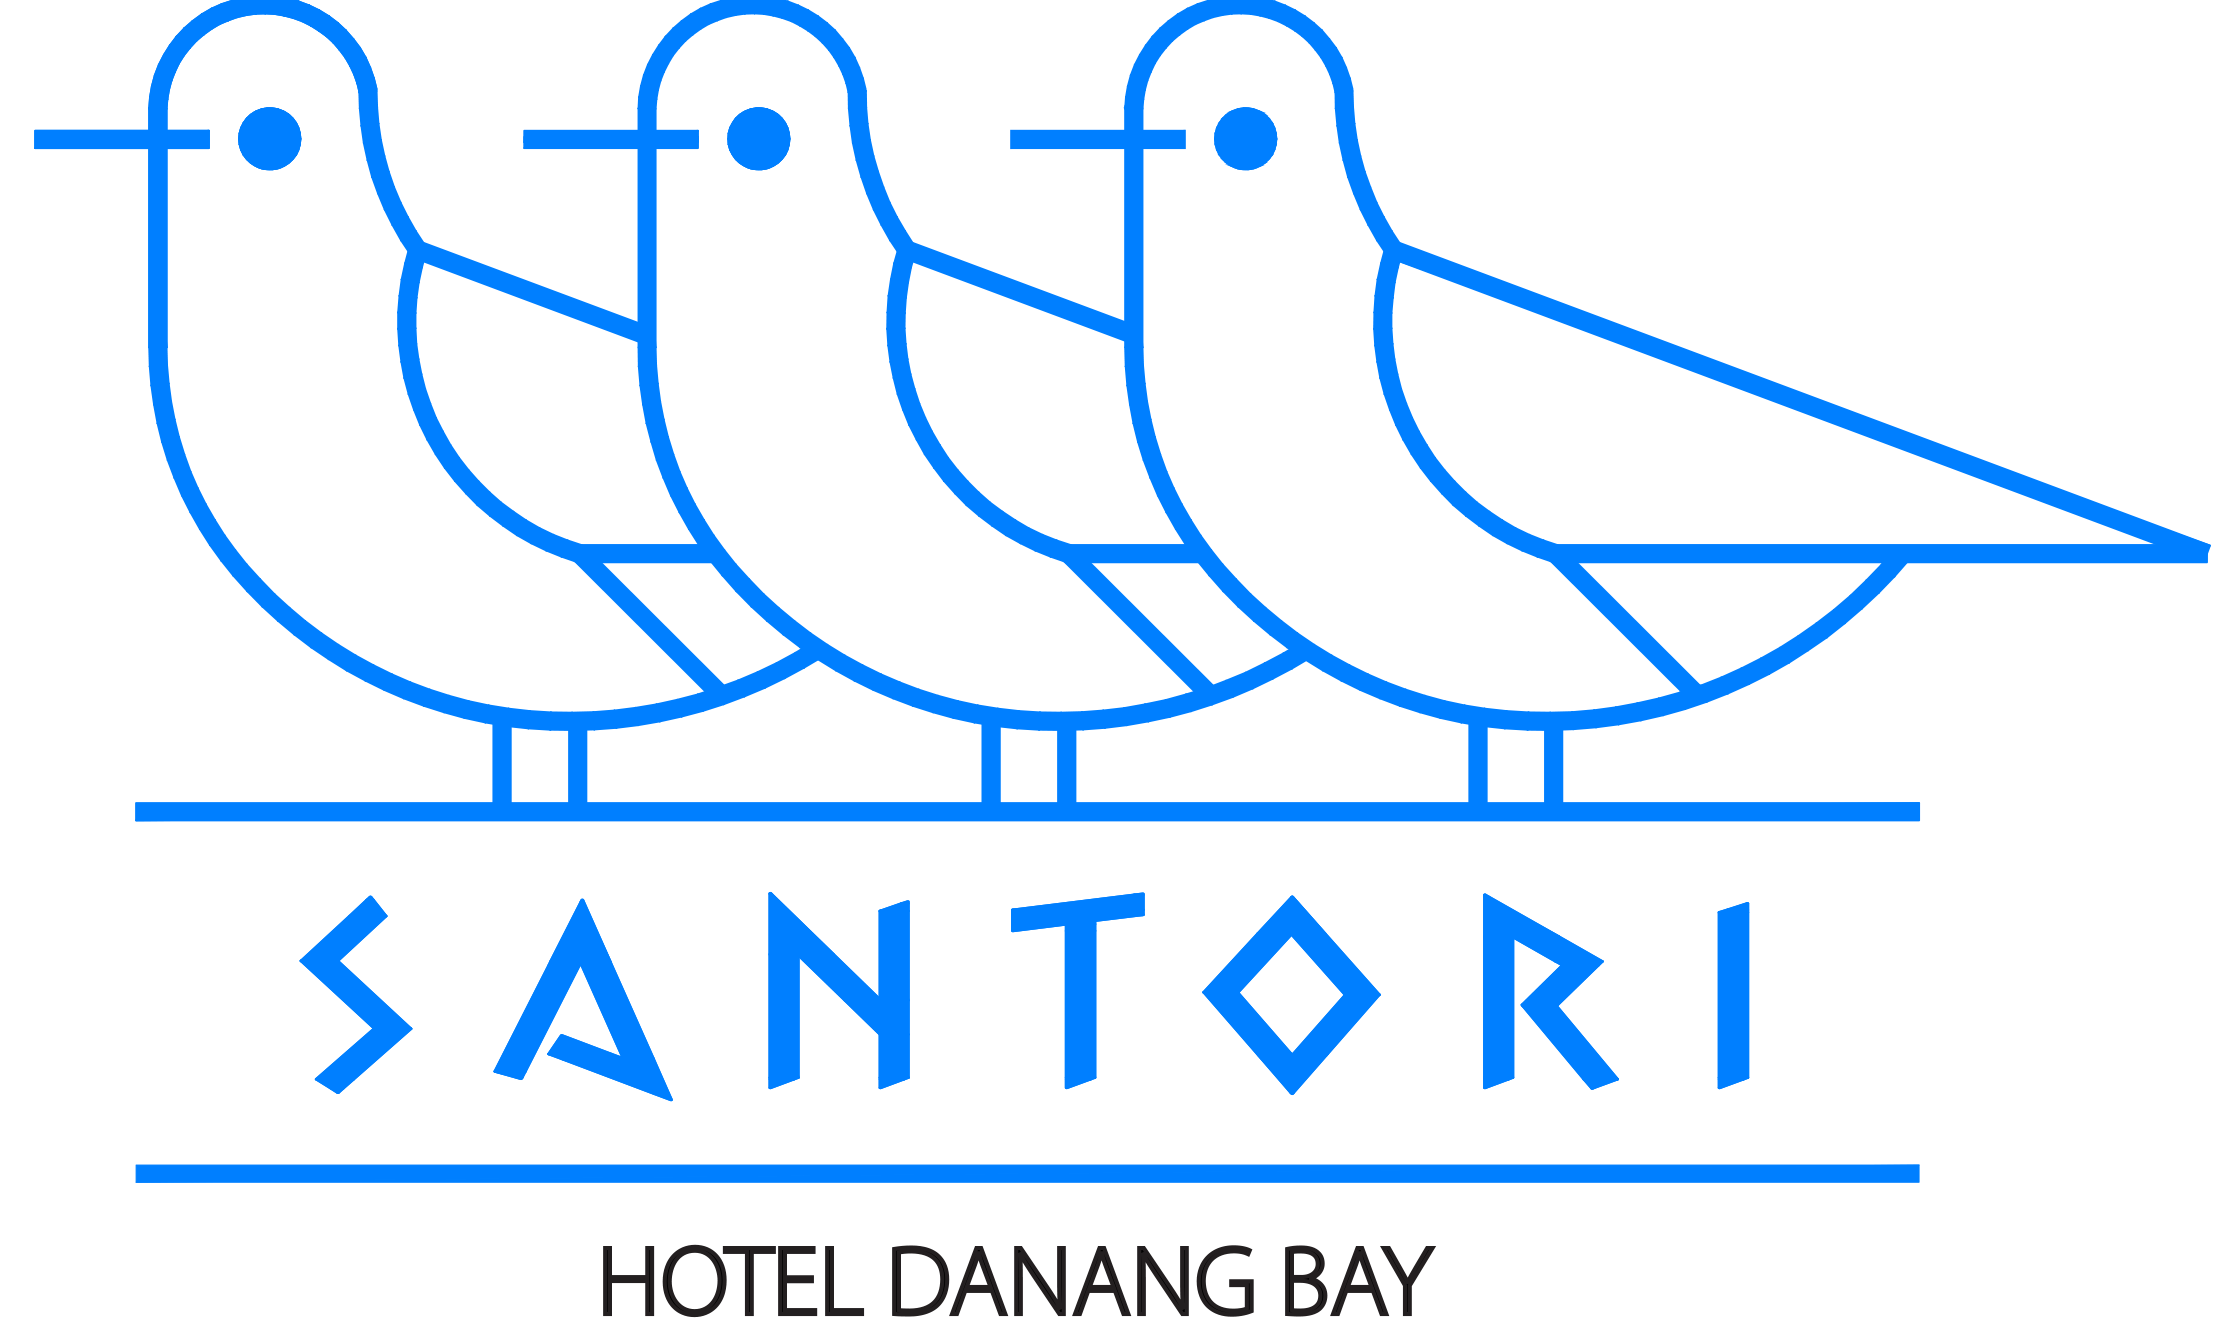 Santori Hotel Danang Bay